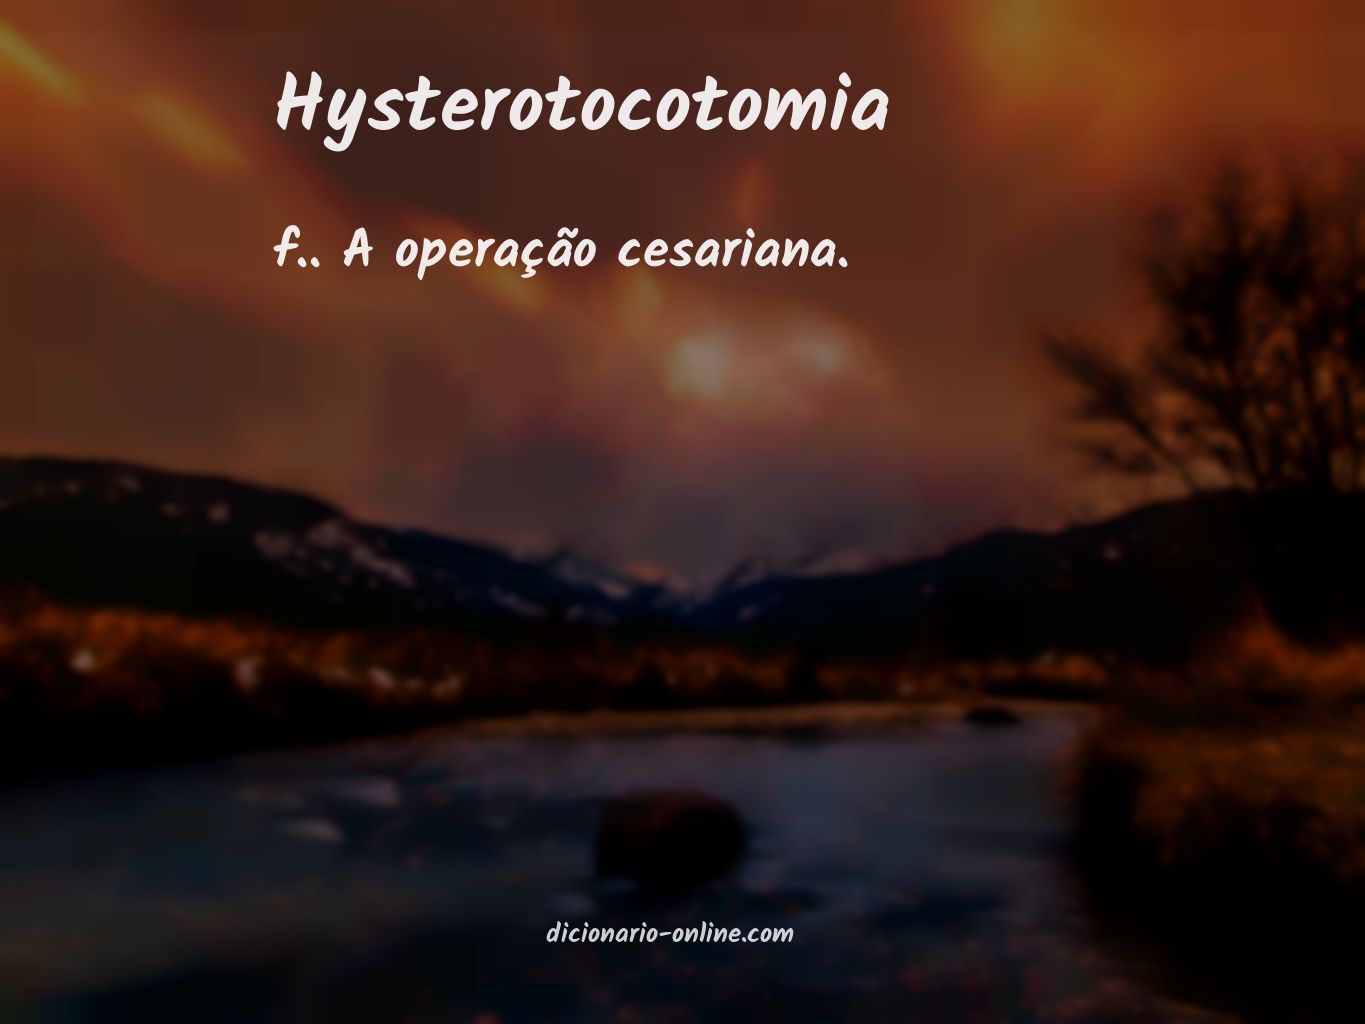 Significado de hysterotocotomia